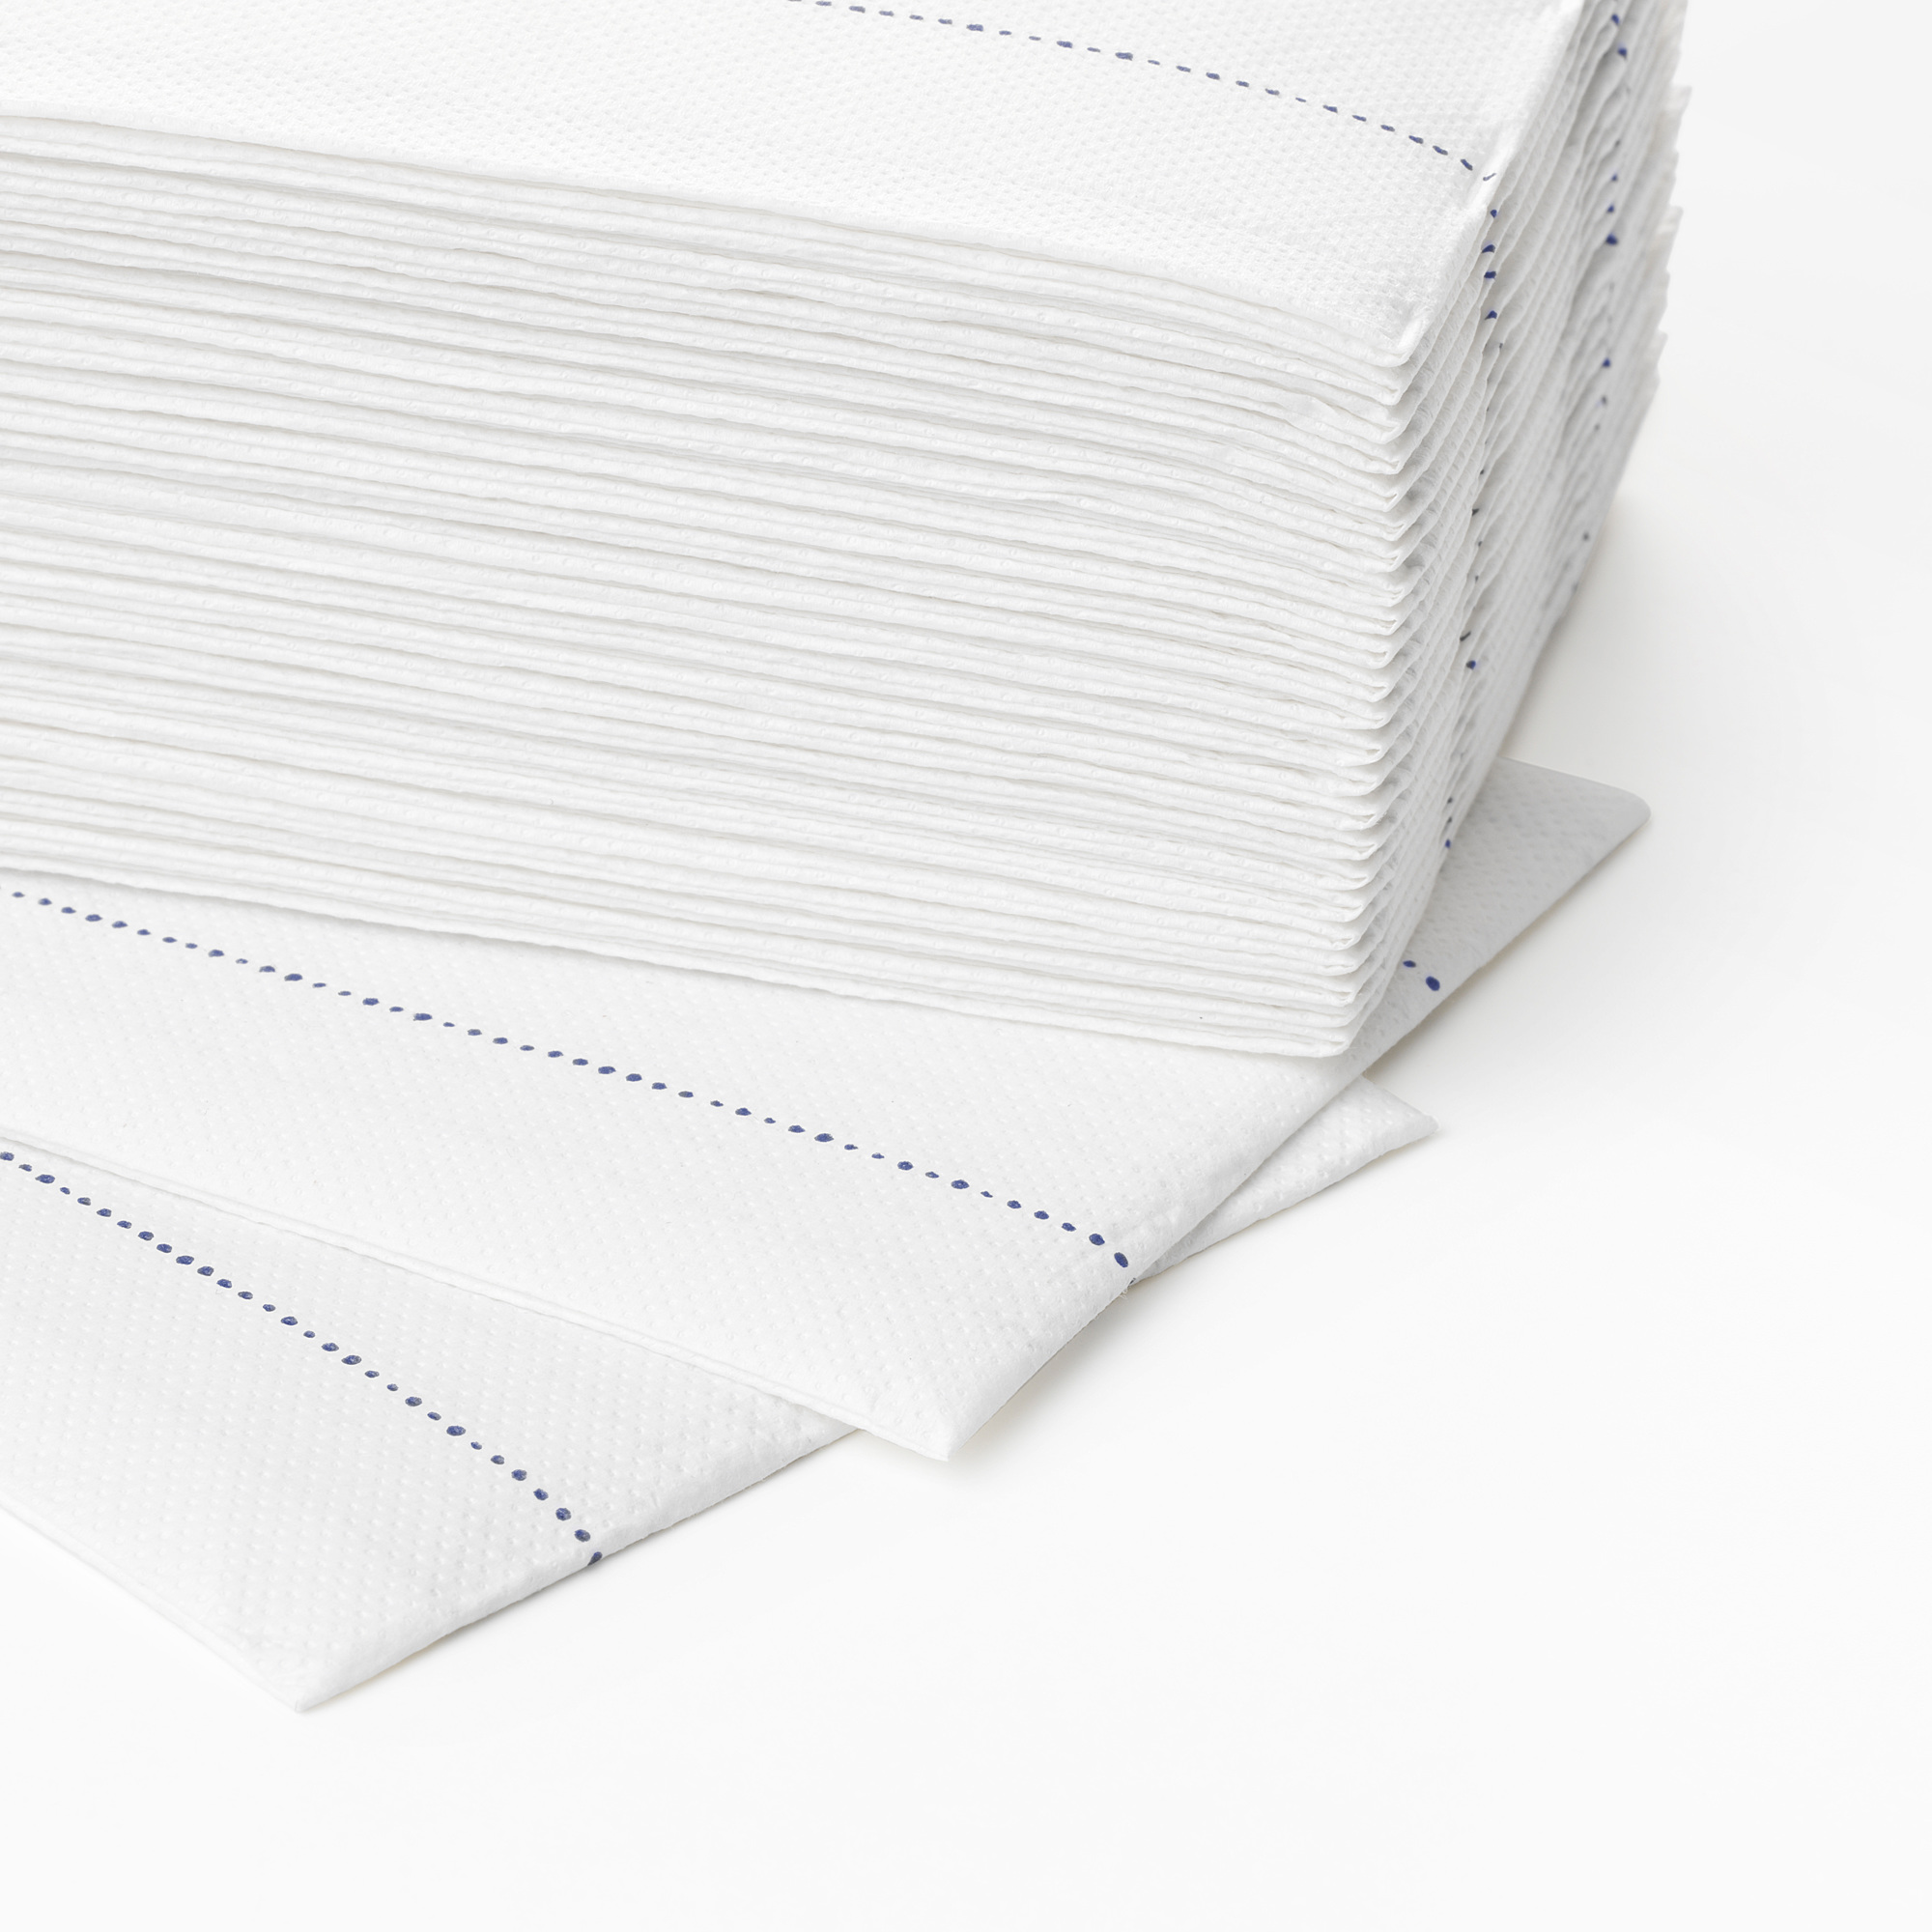 VERKLIGHET paper napkin